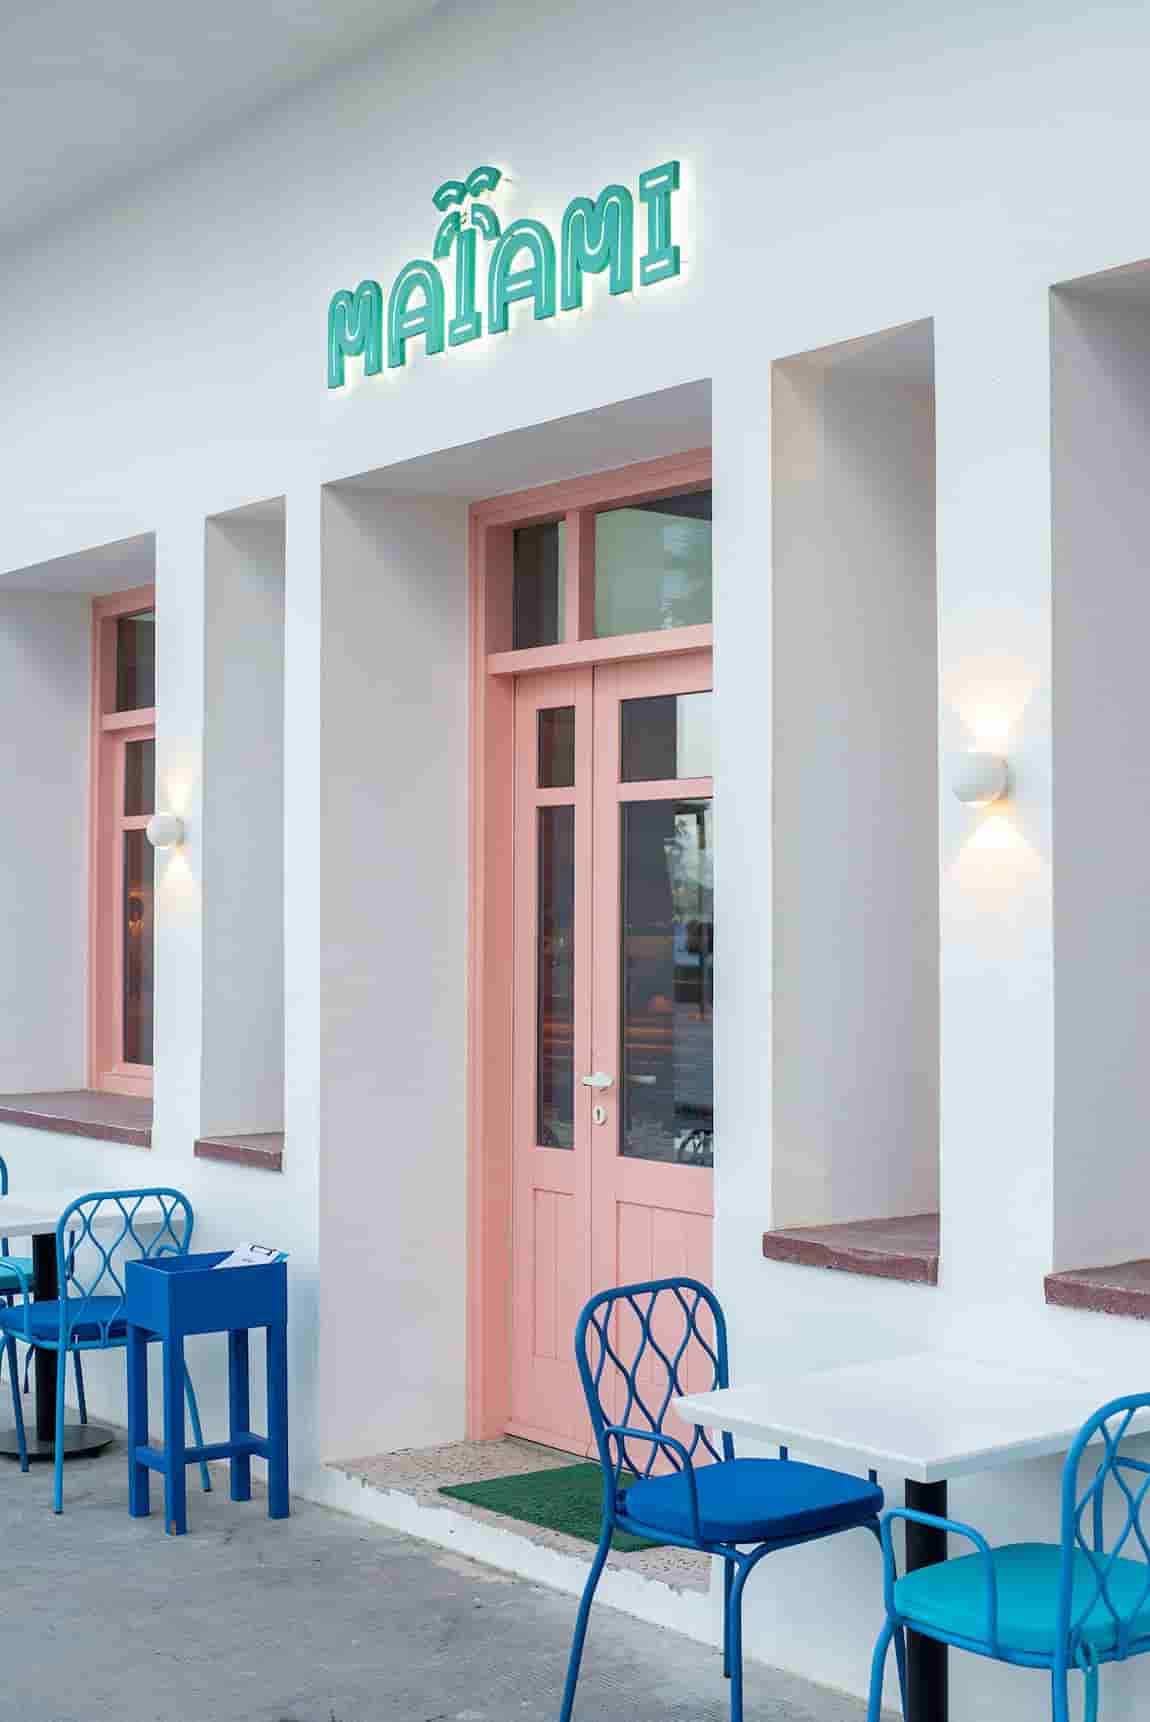 Maiami：A Brasserie/Artist's Studio in Crete Celebrates Art, Food, Wine and Good Company